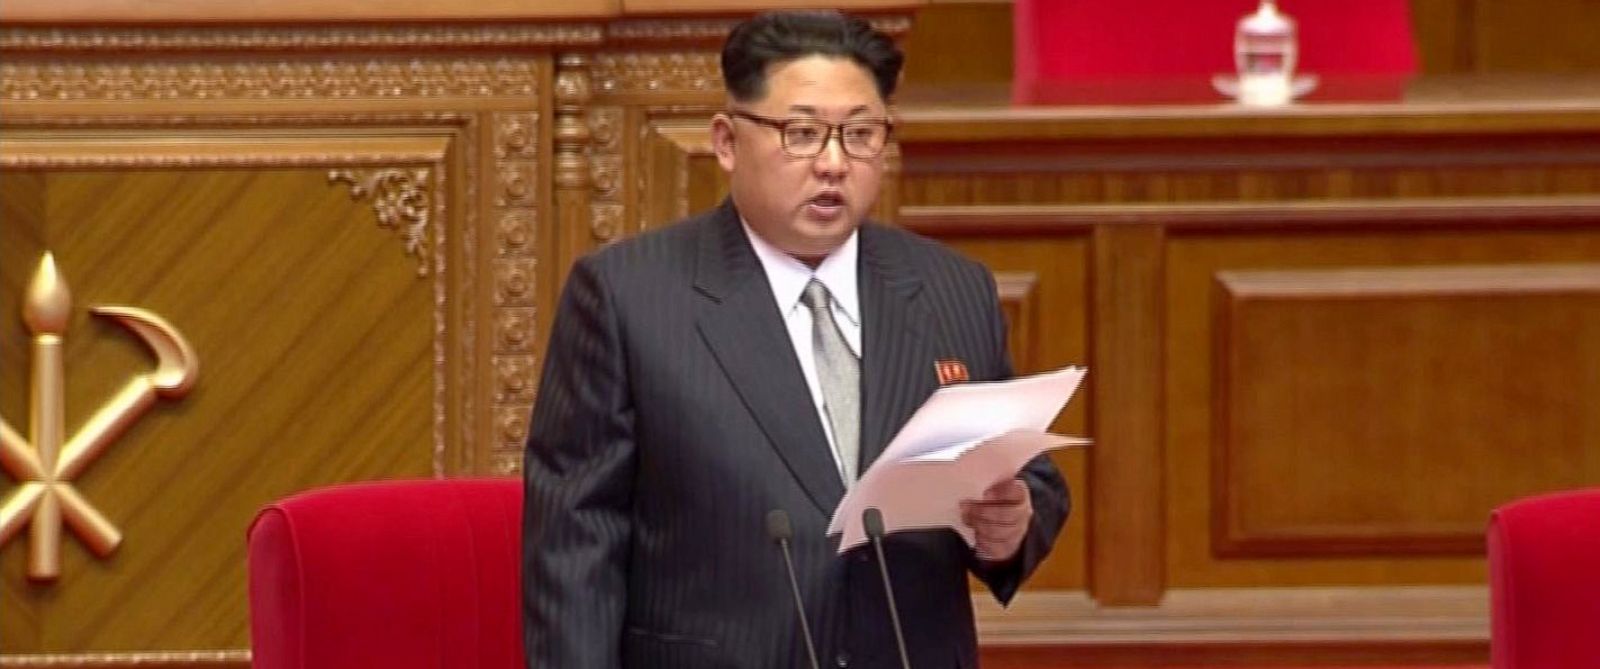 Triều Tiên: Mỹ trừng phạt Kim Jong-un là tuyên chiến - 1